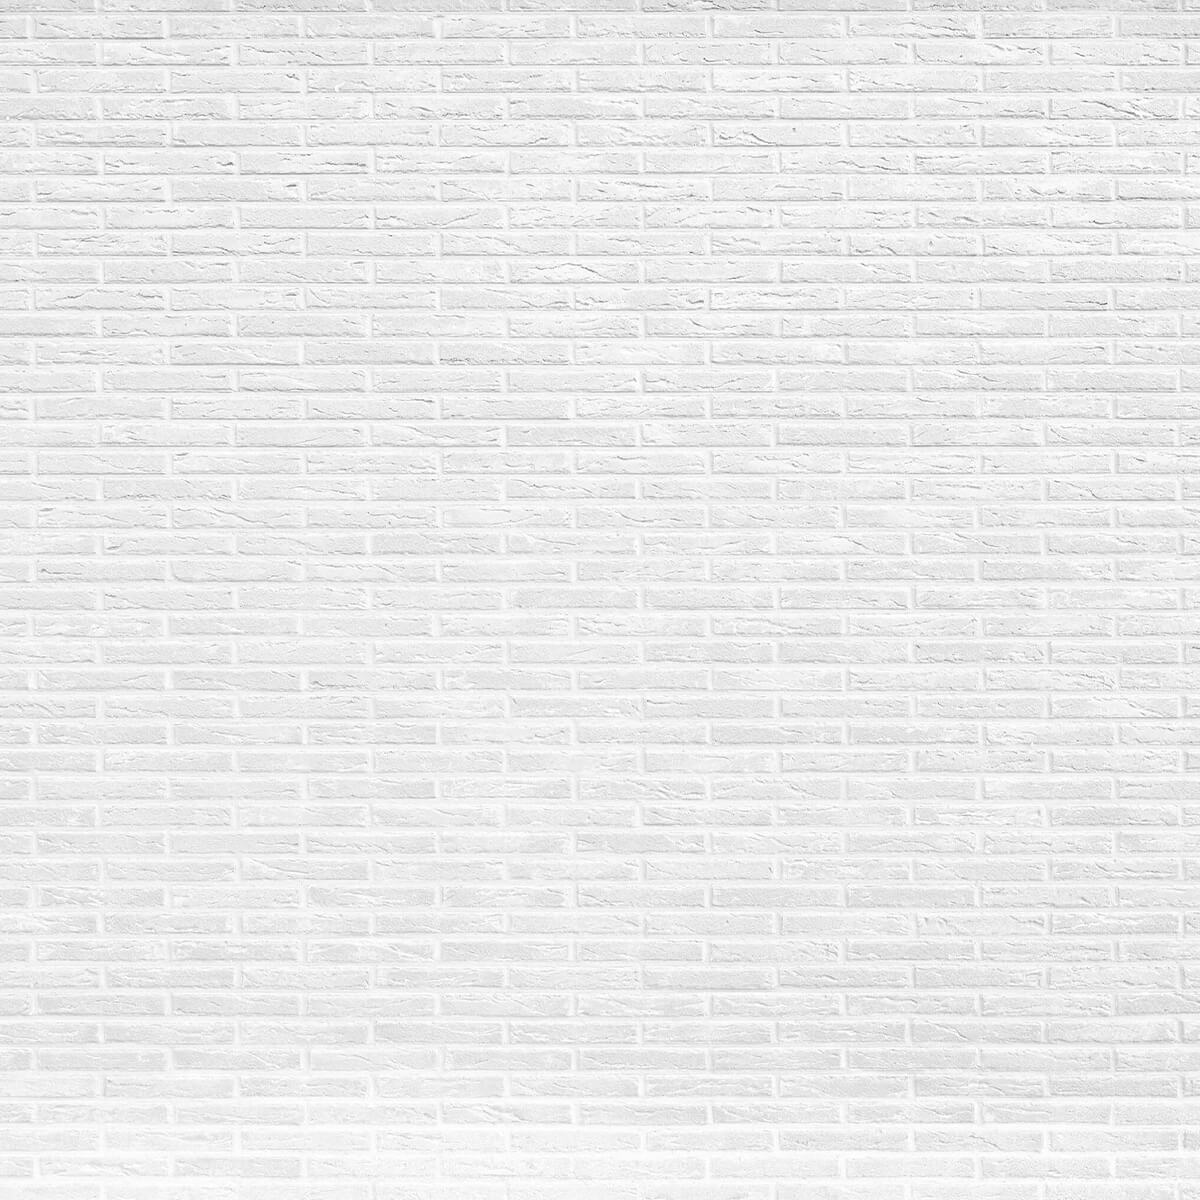 Mur de briques blanches